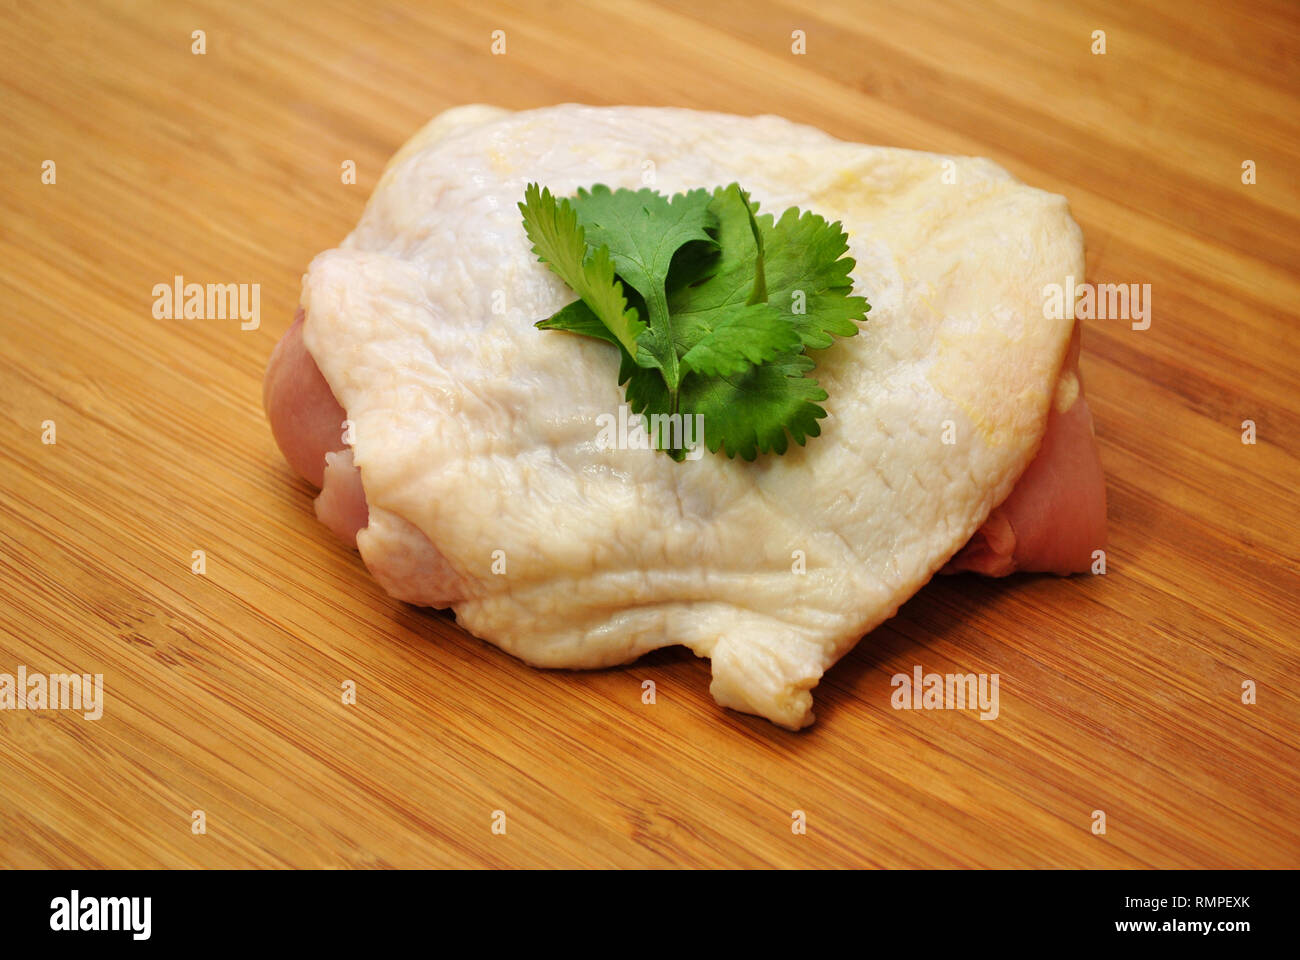 Materie coscia di pollo guarnite con prezzemolo Foto Stock